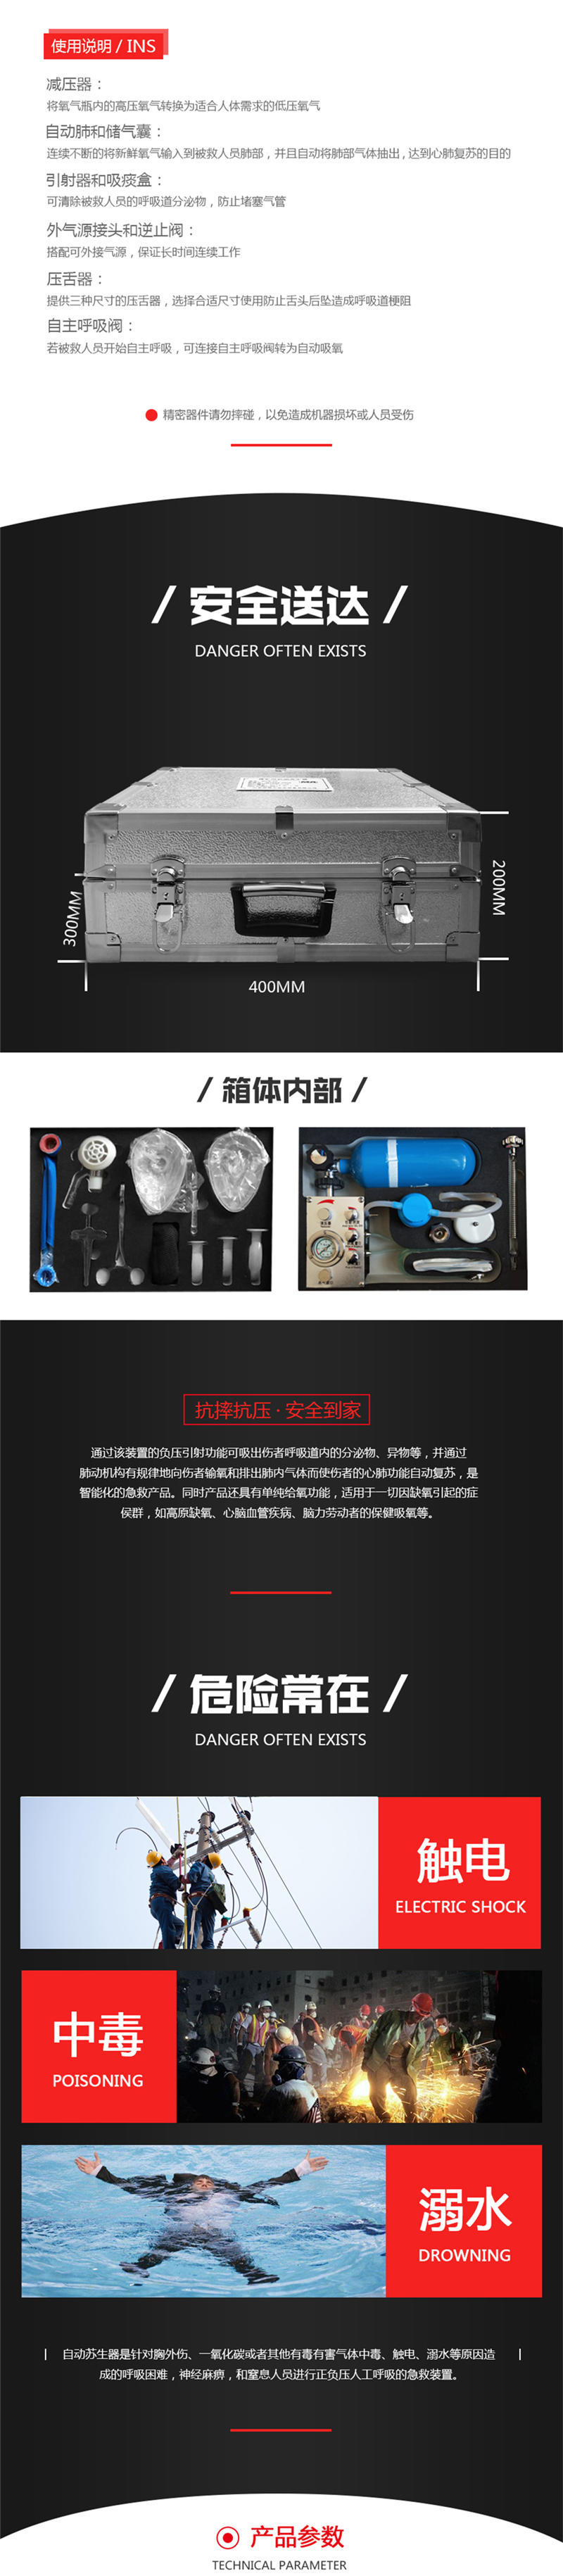 上海皓驹厂家供应MZS-30自动苏生器 矿用苏生器 正负压人工呼吸苏生器示例图1